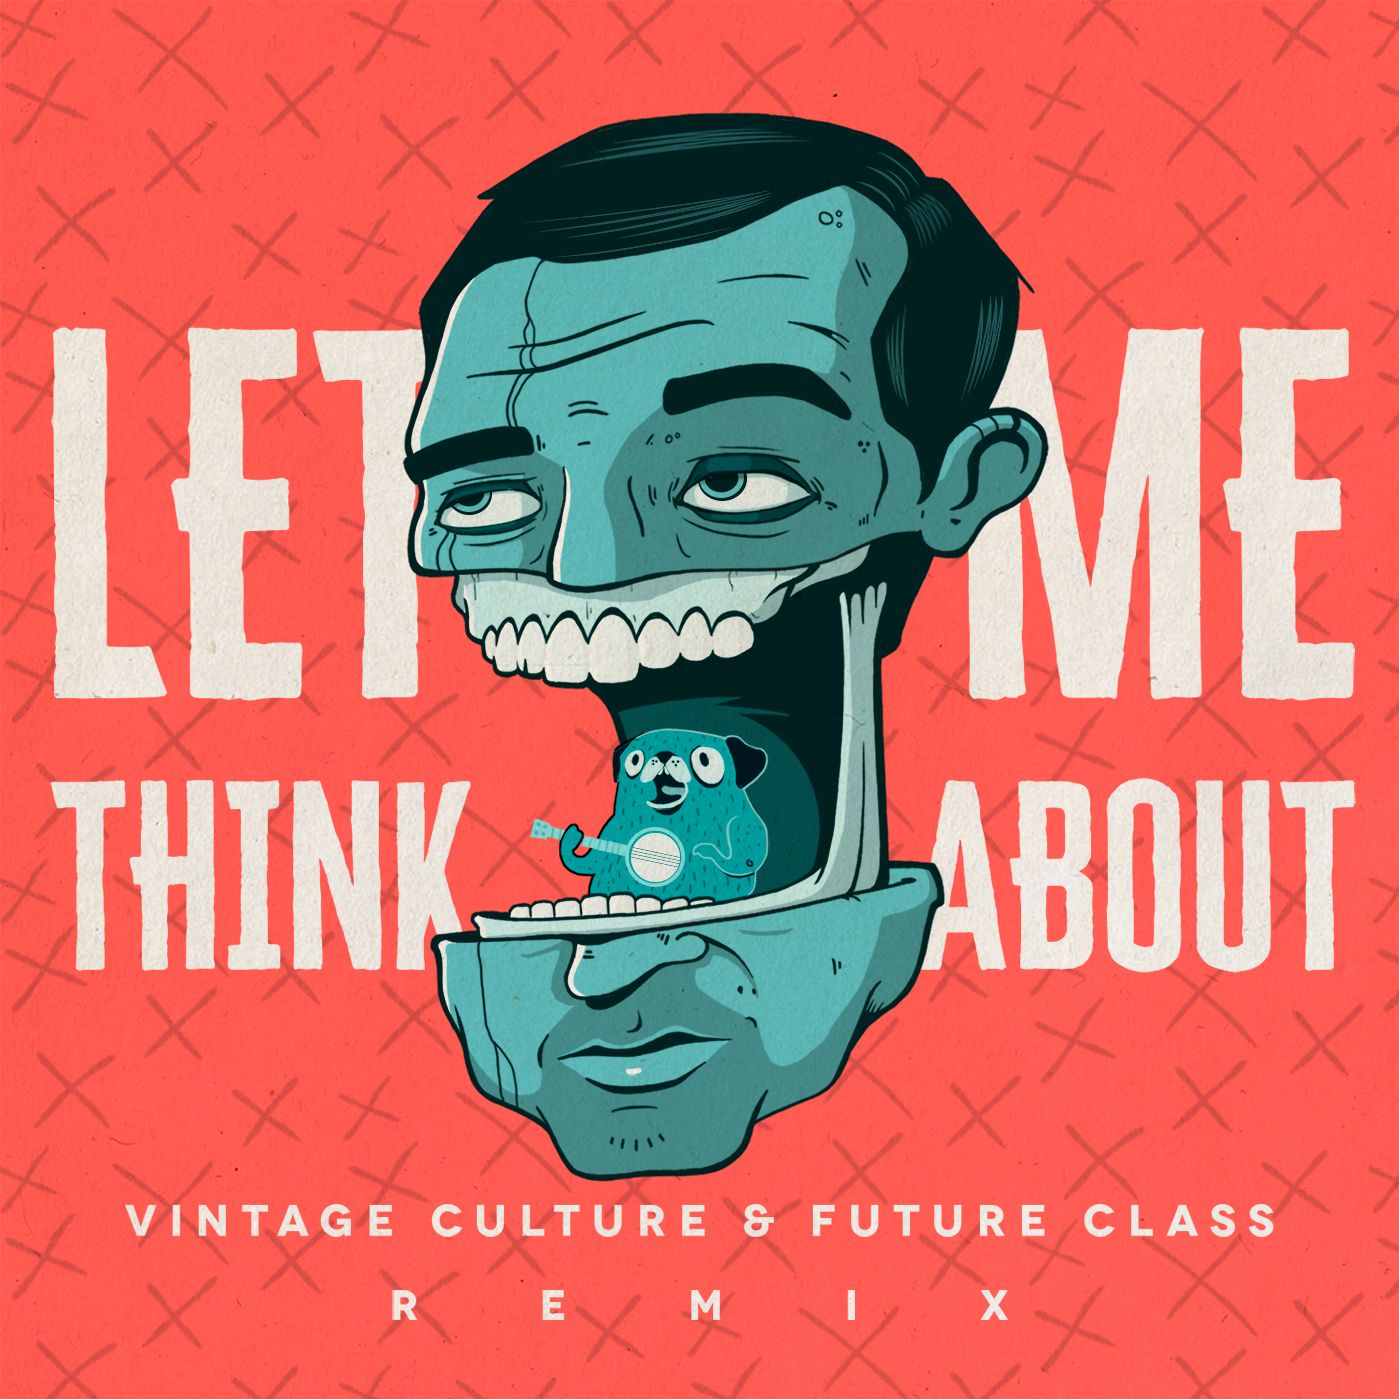 ഡൗൺലോഡ് Vintage Culture & Future Class - Let Me Think About